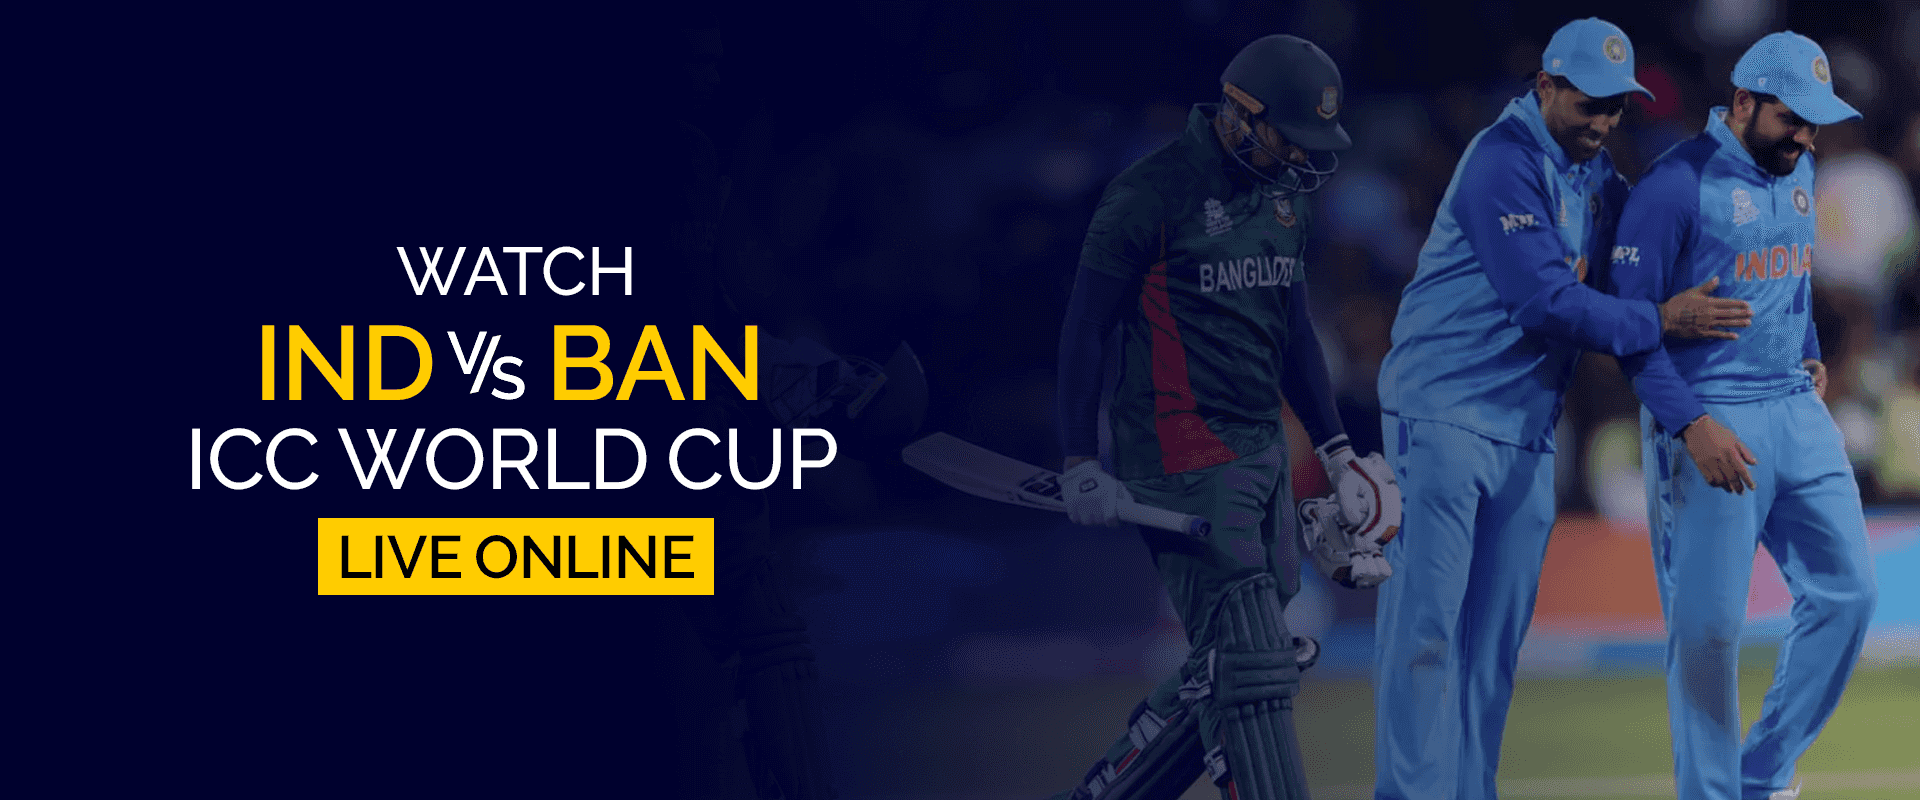 Vea la Copa Mundial ICC India vs Bangladesh en vivo en línea